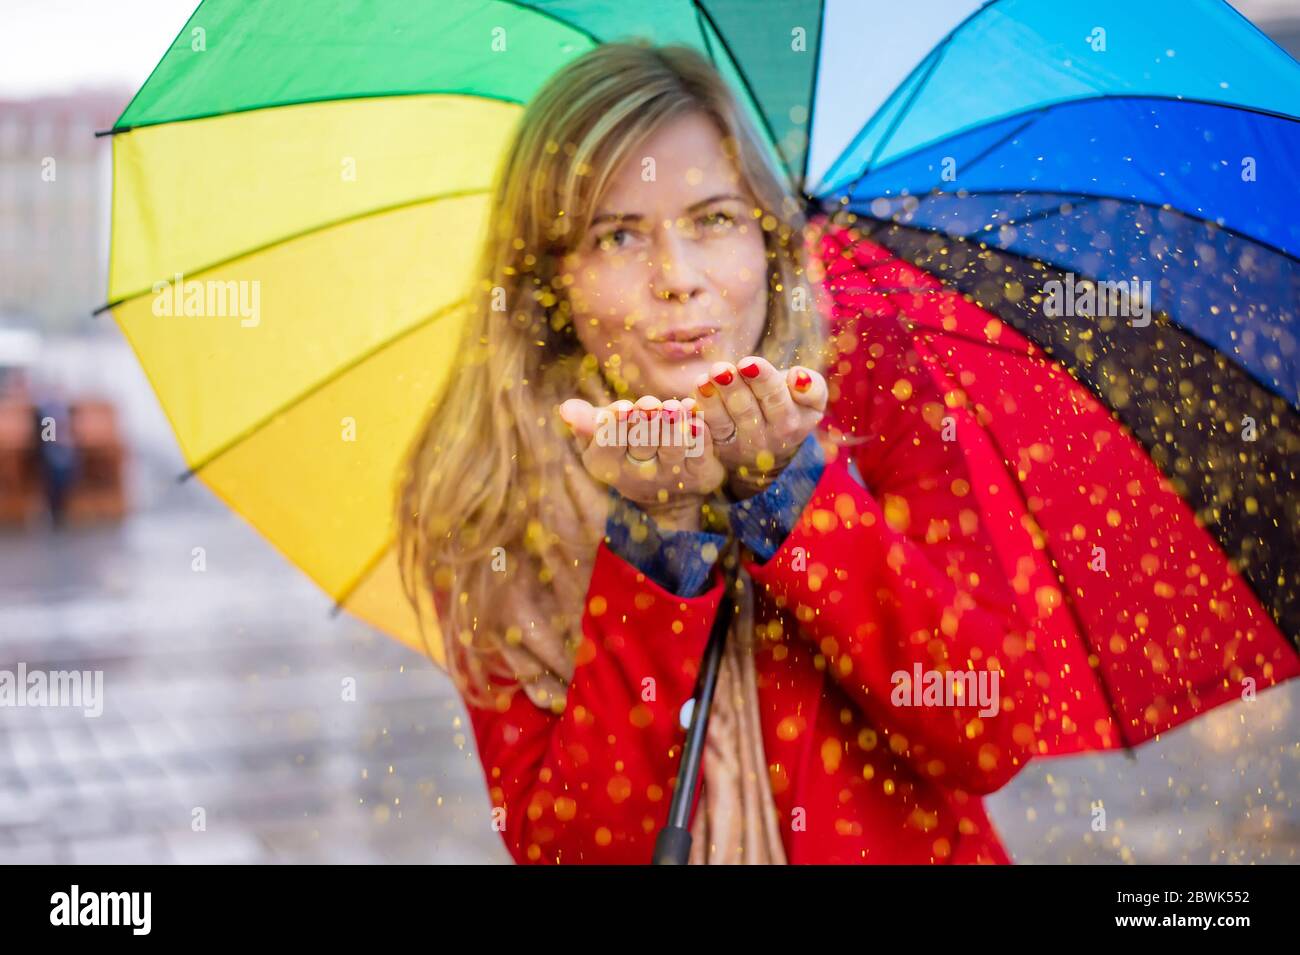 jeune femme blonde tenant un parapluie de couleur arc-en-ciel dans une ambiance festive le jour de pluie. confetti de paillettes soufflantes Banque D'Images